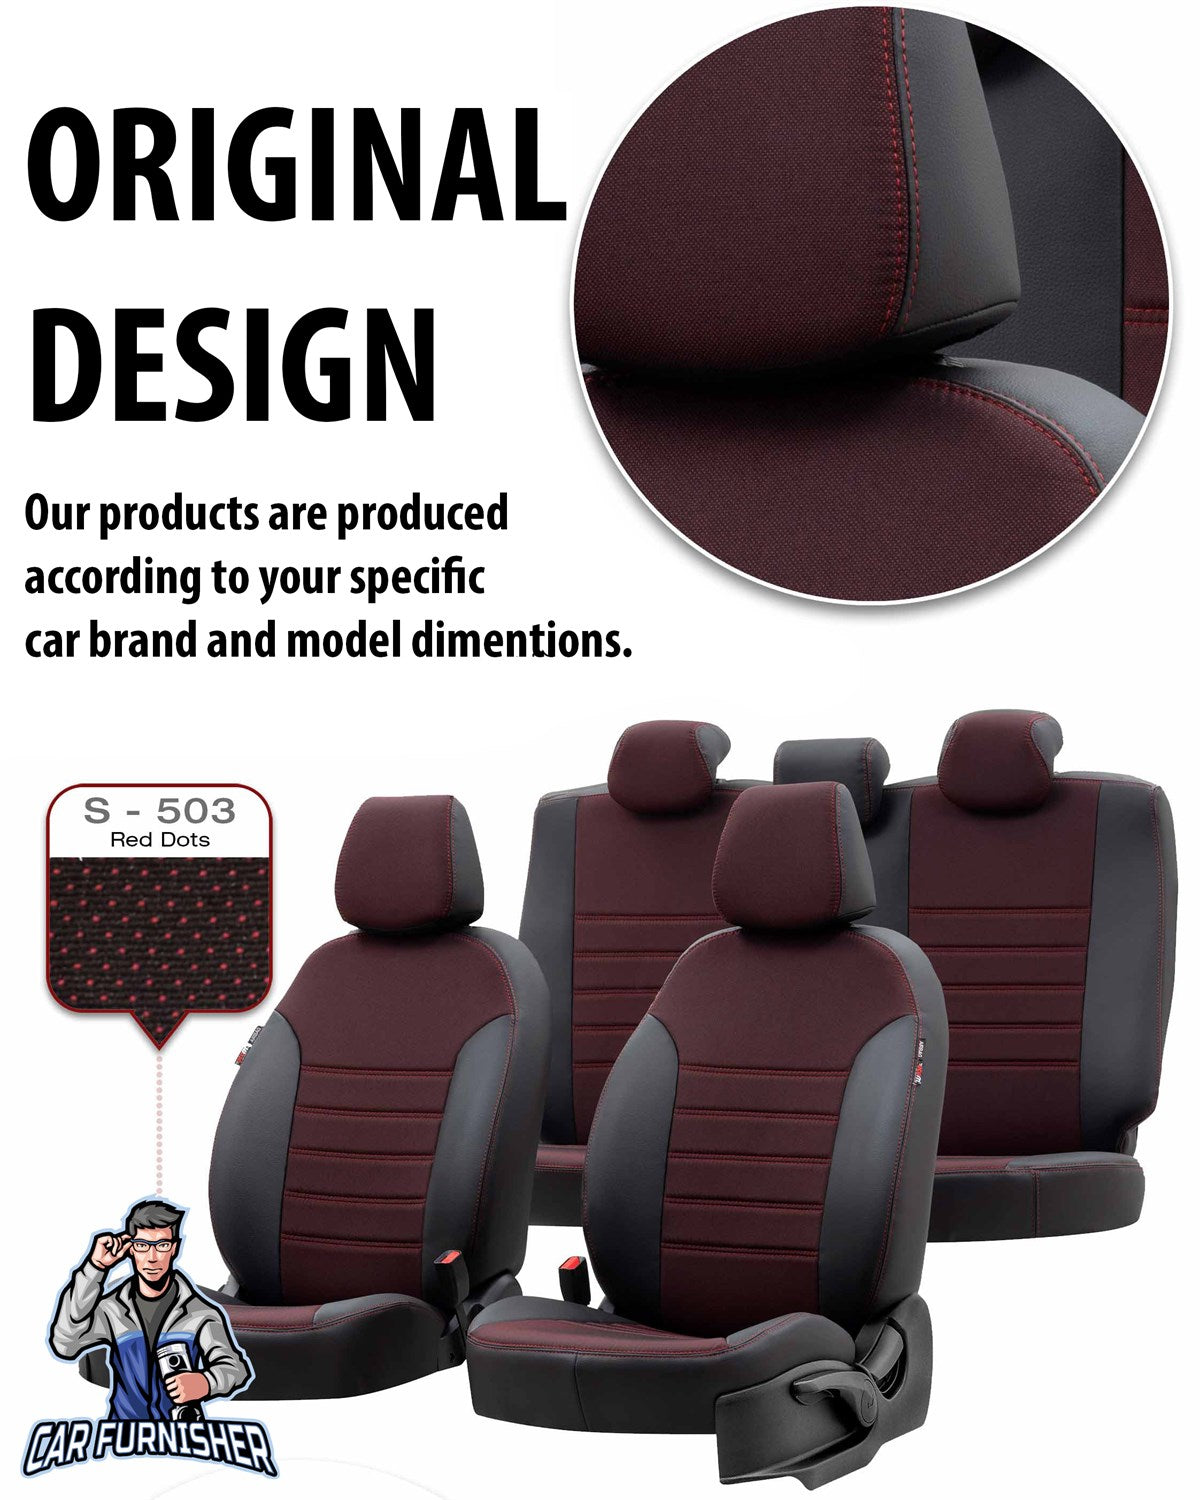 Daewoo Tacuma Seat Covers Paris Leather & Jacquard Design Gray Leather & Jacquard Fabric